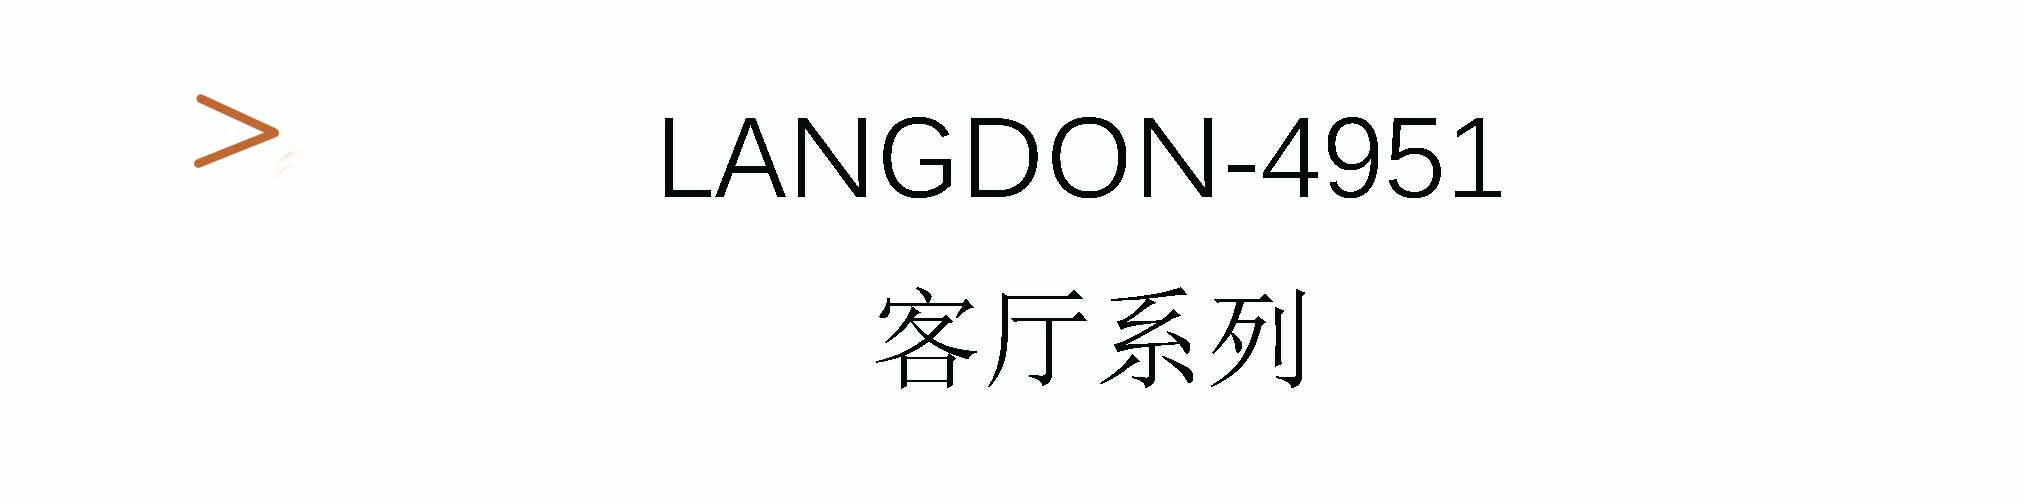 Langdon-4951